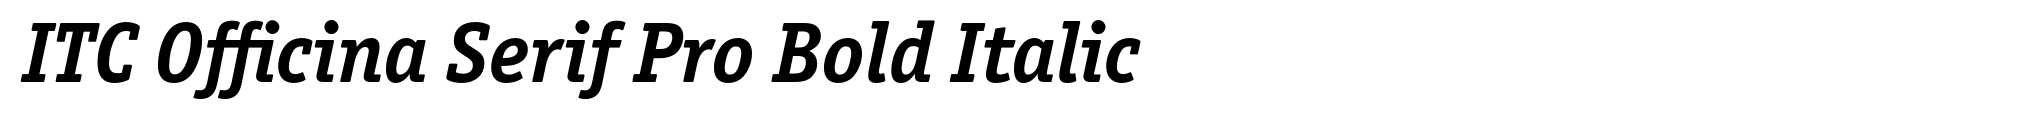 ITC Officina Serif Pro Bold Italic image